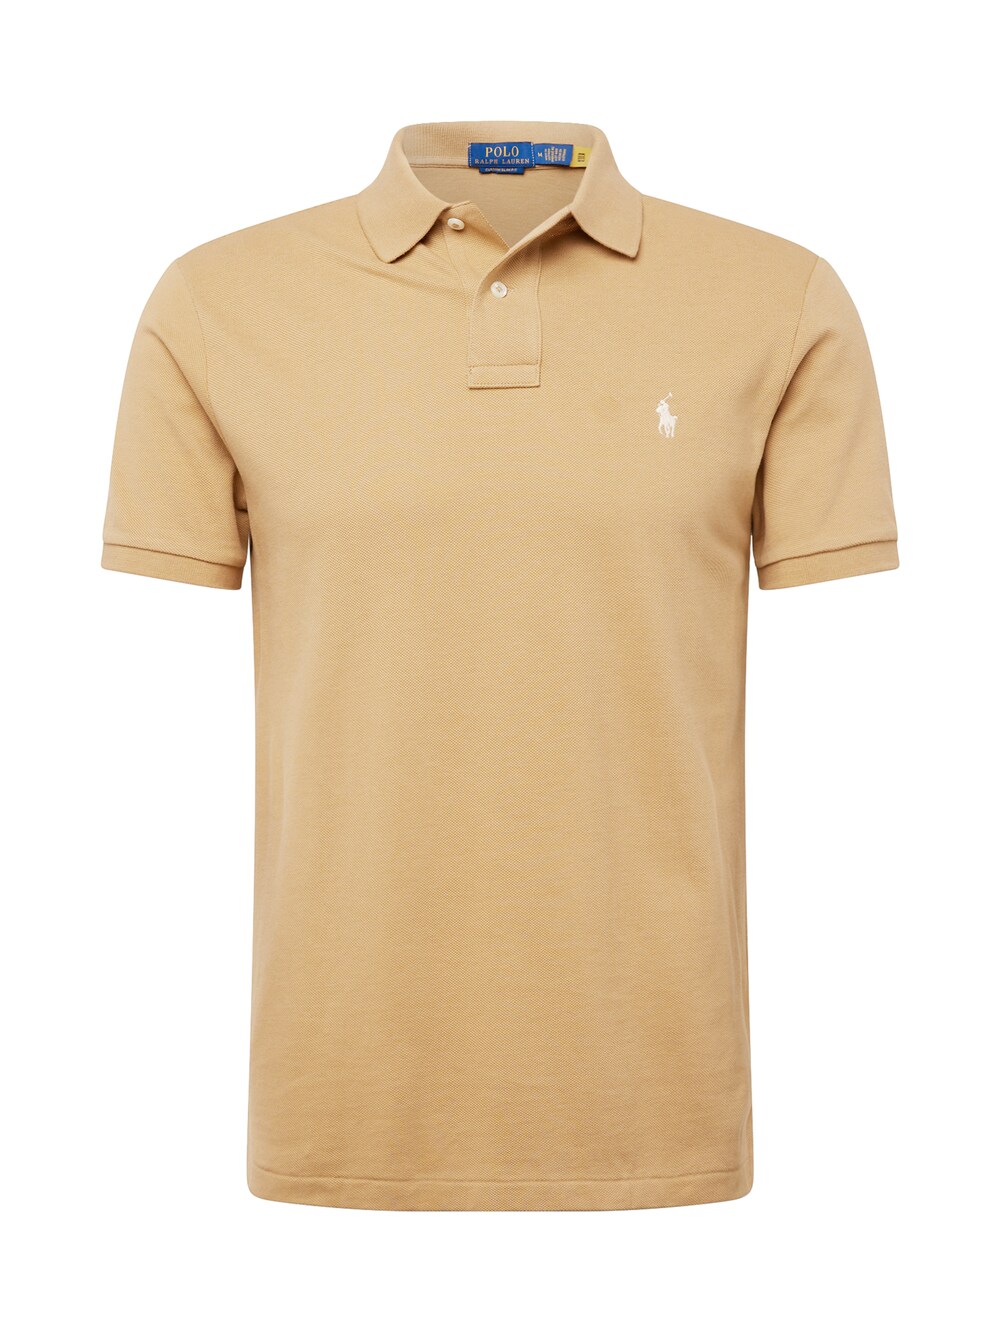 Футболка Polo Ralph Lauren, светло-коричневый футболка zara ribbed polo top светло коричневый